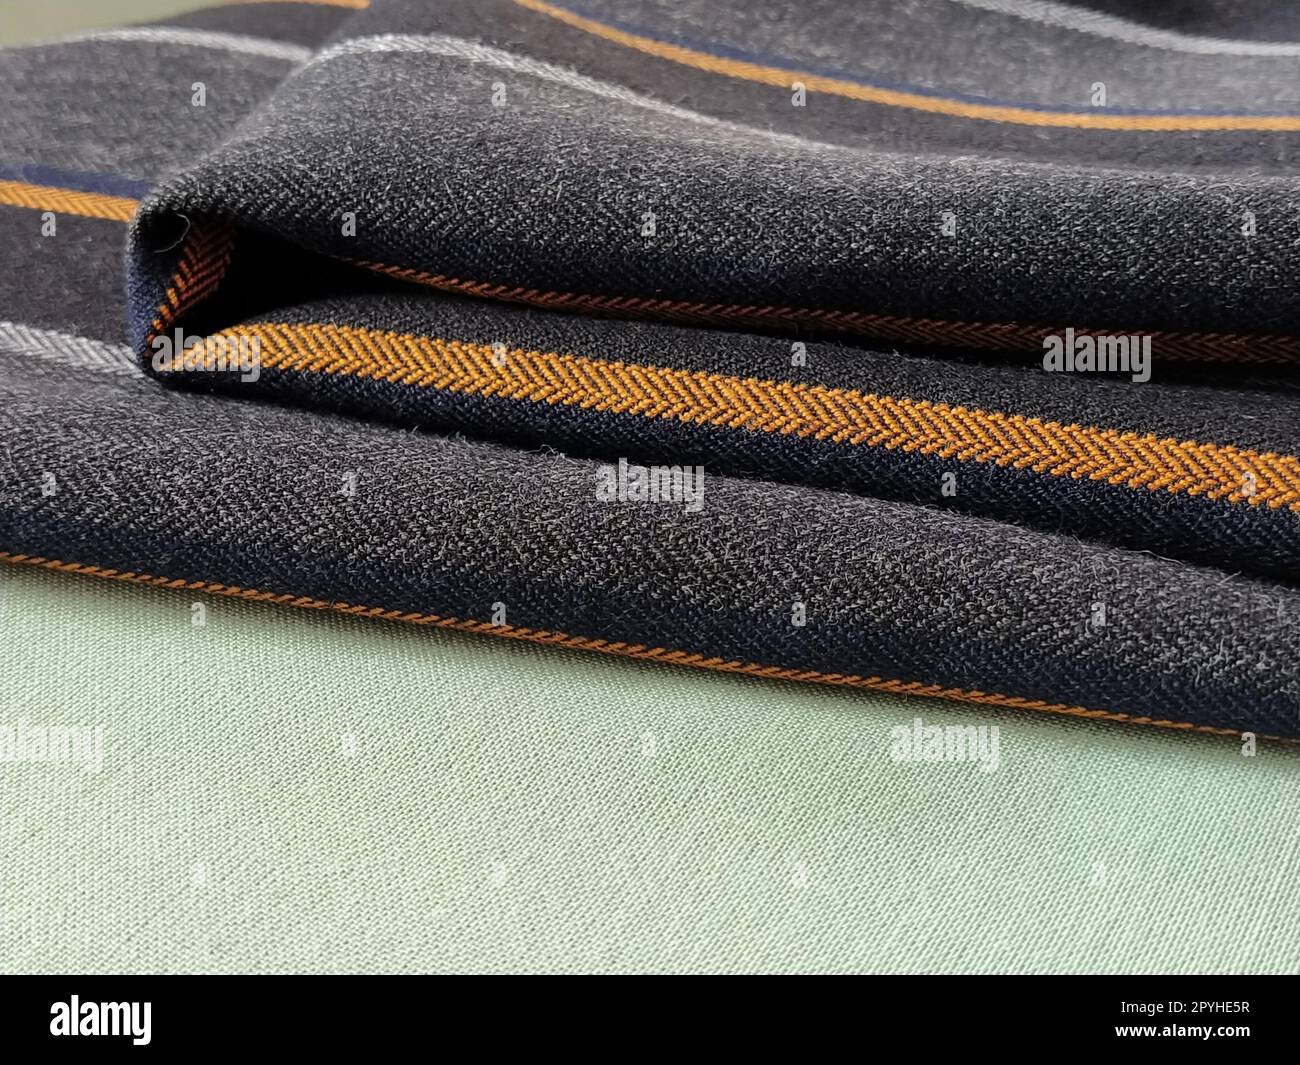 Tejido gris-negro con rayas naranjas y azules. Tela textil doblada cuidadosamente en la superficie. Material de lana natural para coser ropa y tapicería. Estilo de vida. Primer plano. Enfoque suave Foto de stock